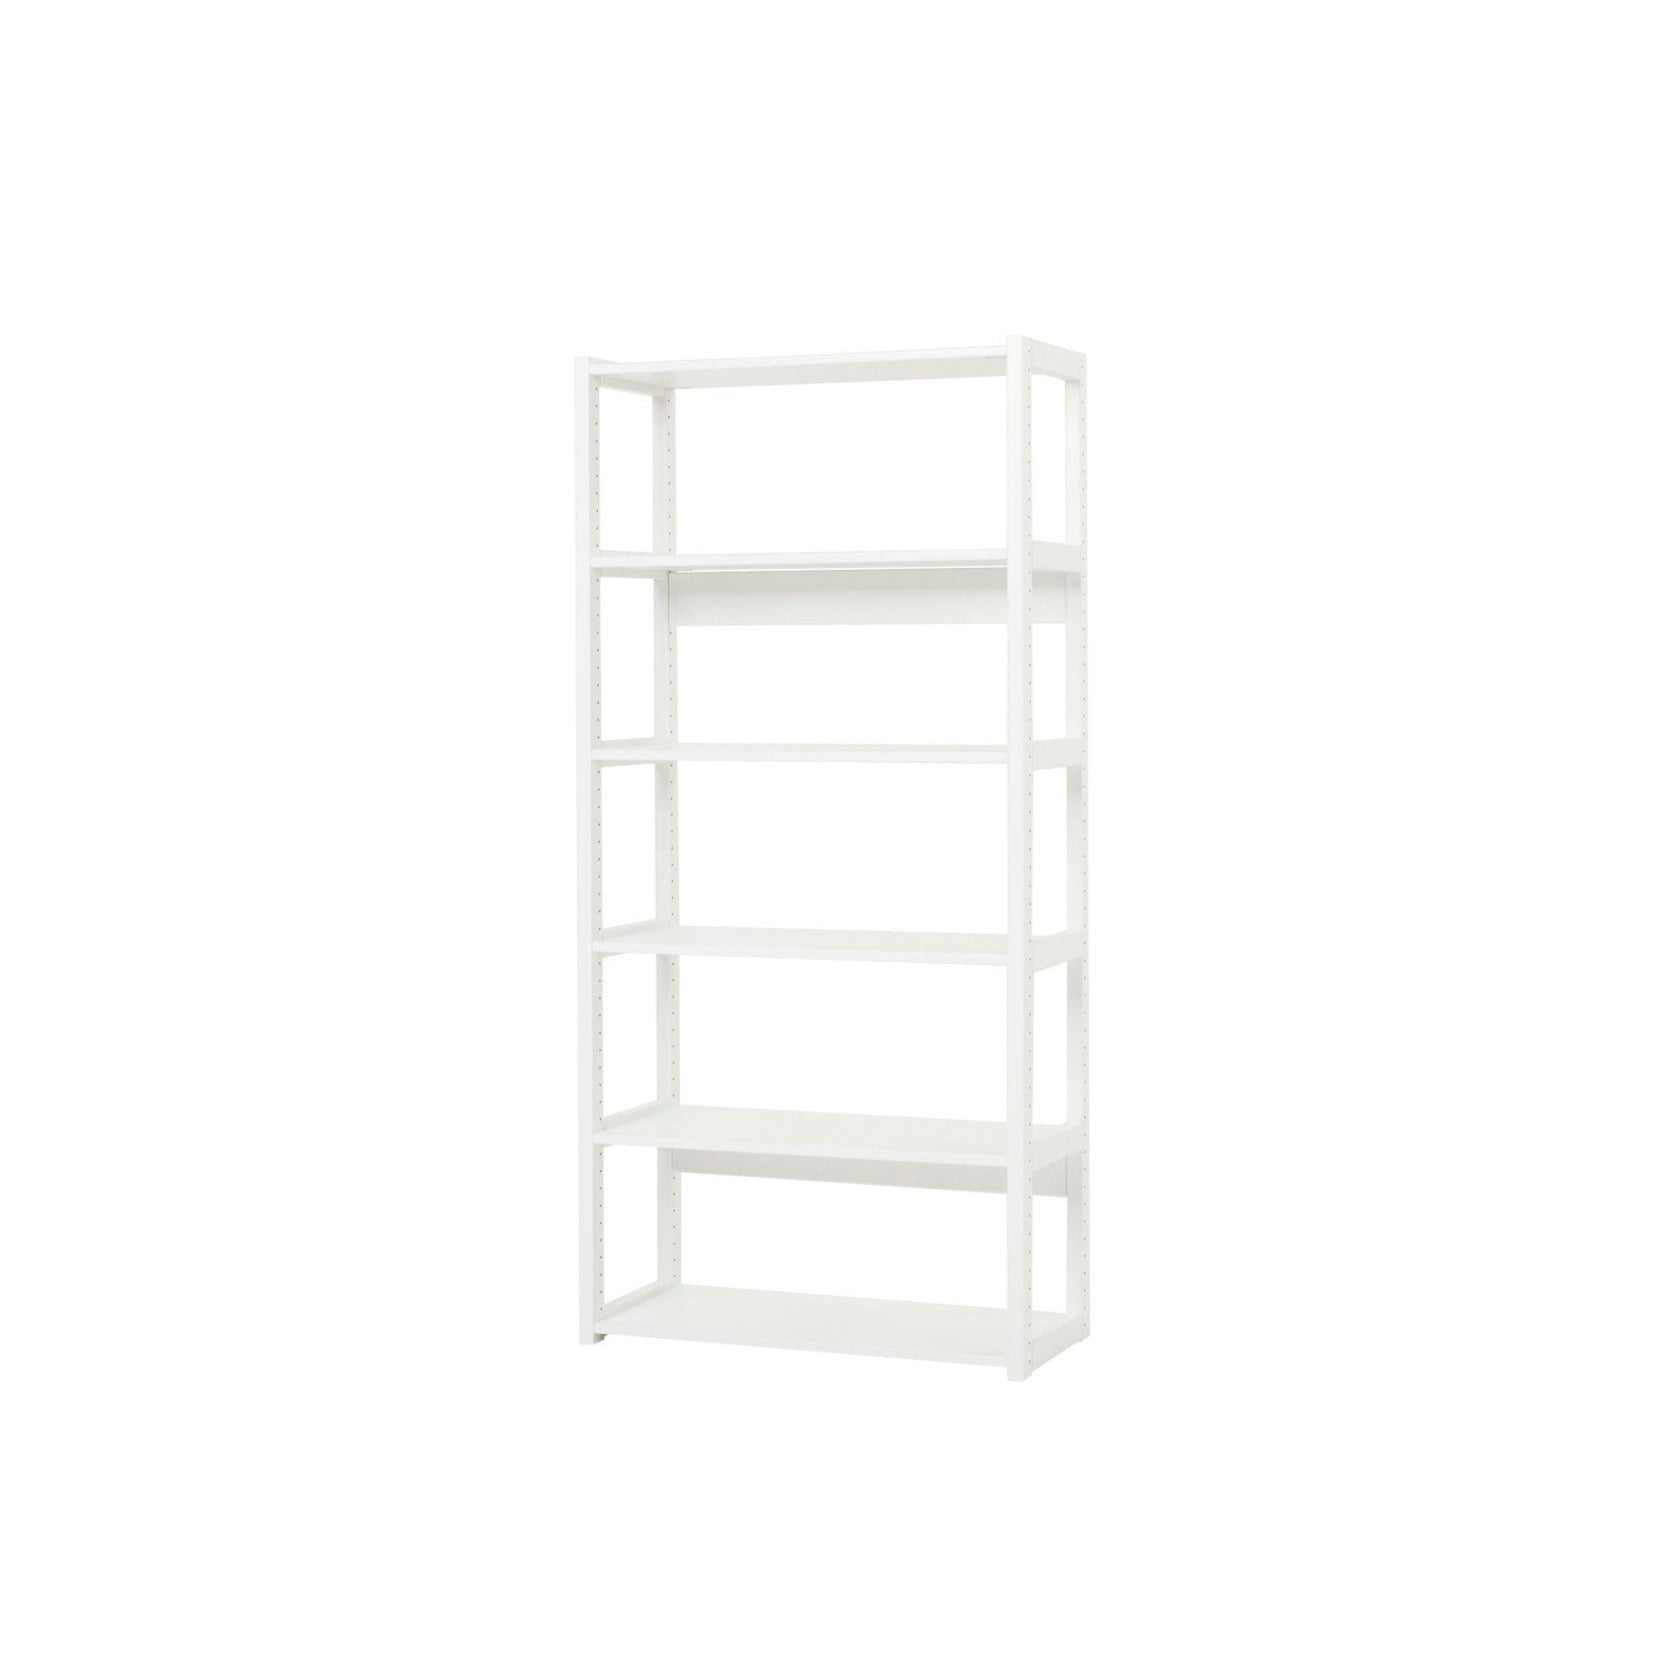 Hoppekids 'Storey' Shelving Unit - 6 Shelves (2 Shelf Sizes Available)